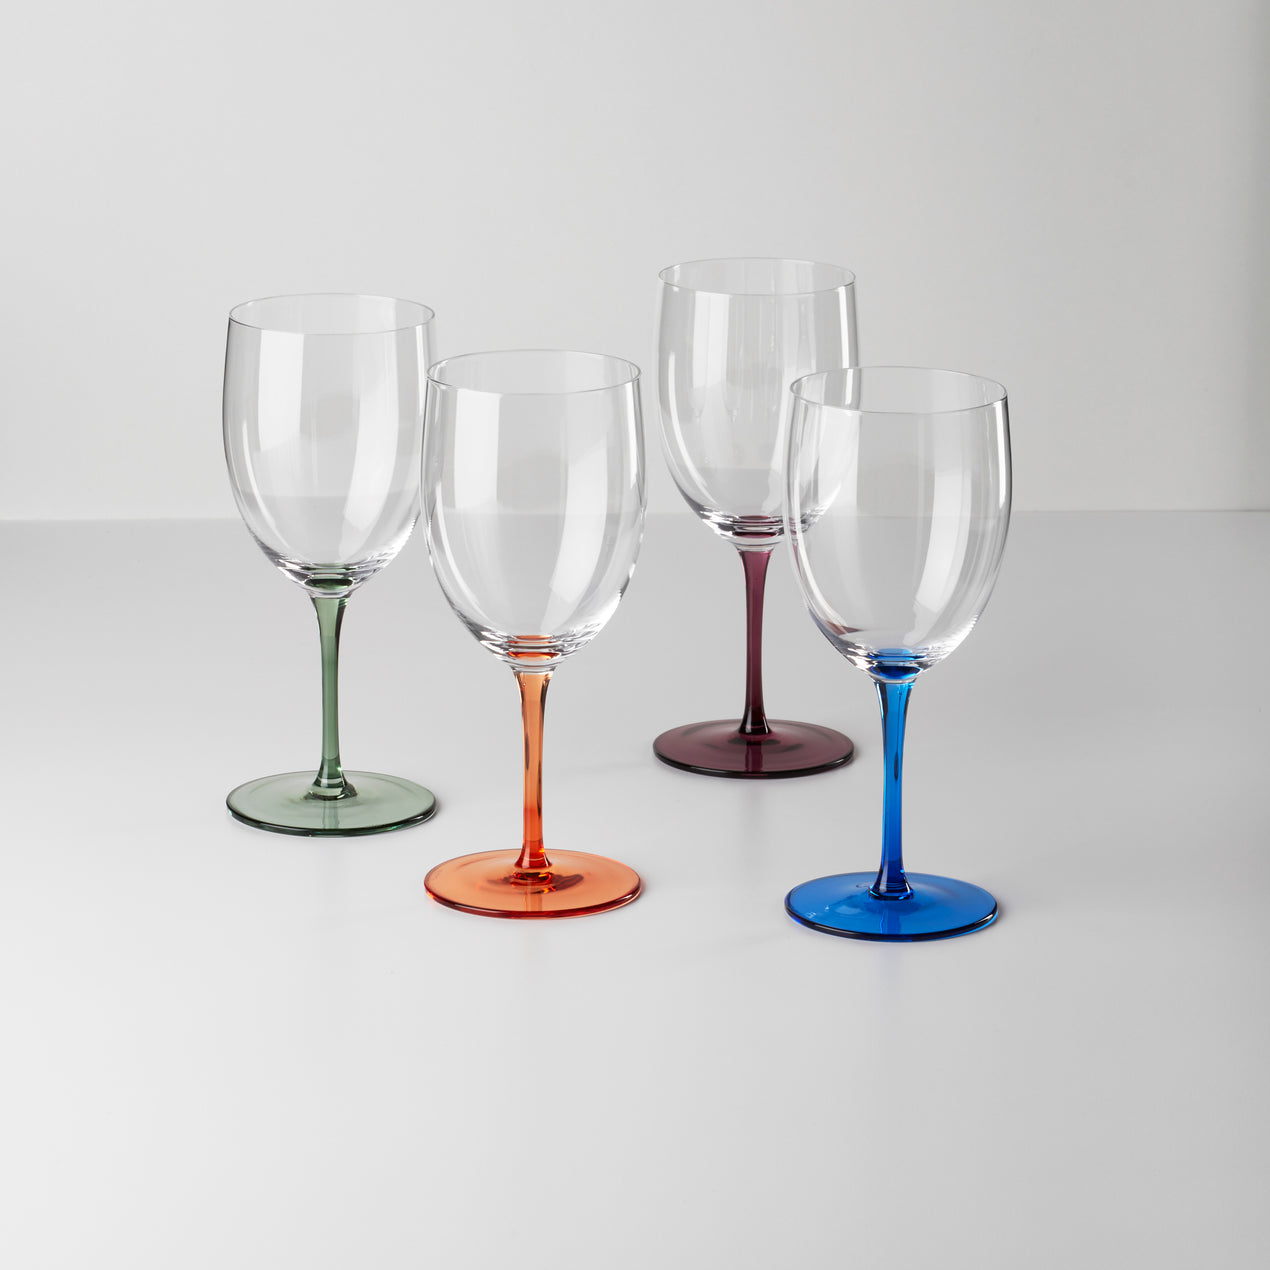 Multicolored Wine Glass Set